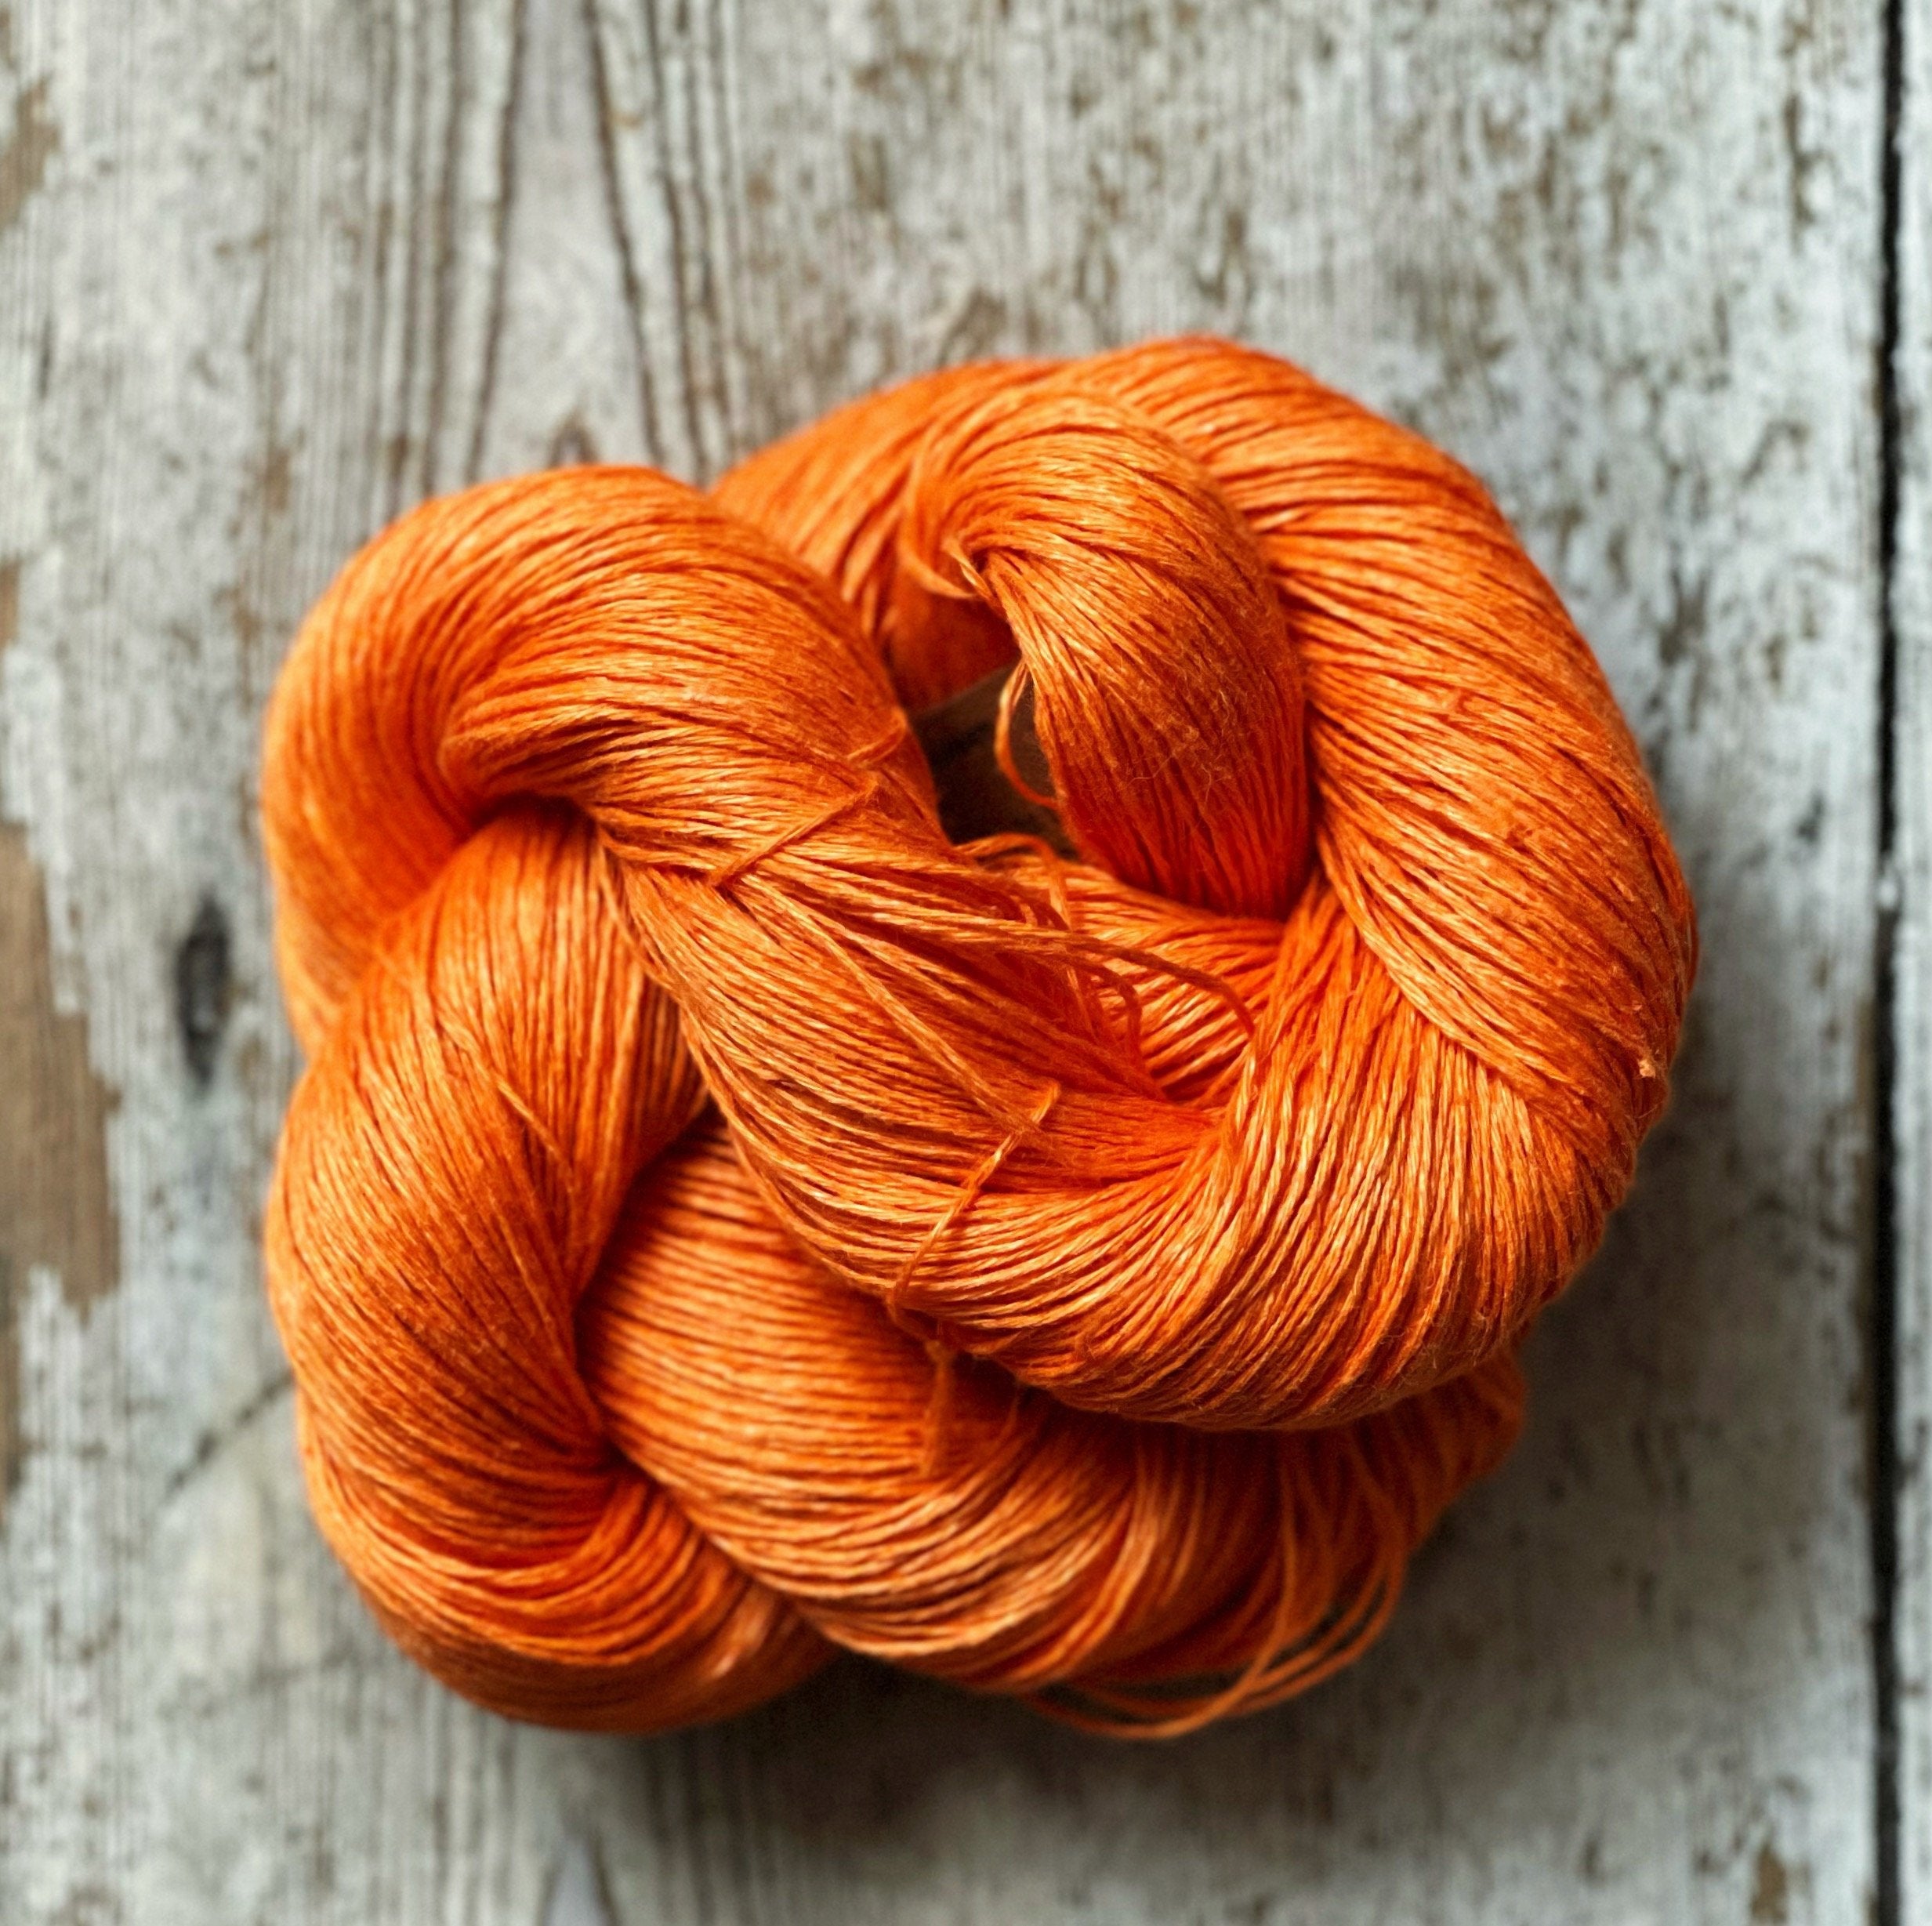 Linen yarn, Lithuanian linen thread, 100% Linen lace yarn in 1.8 oz balls